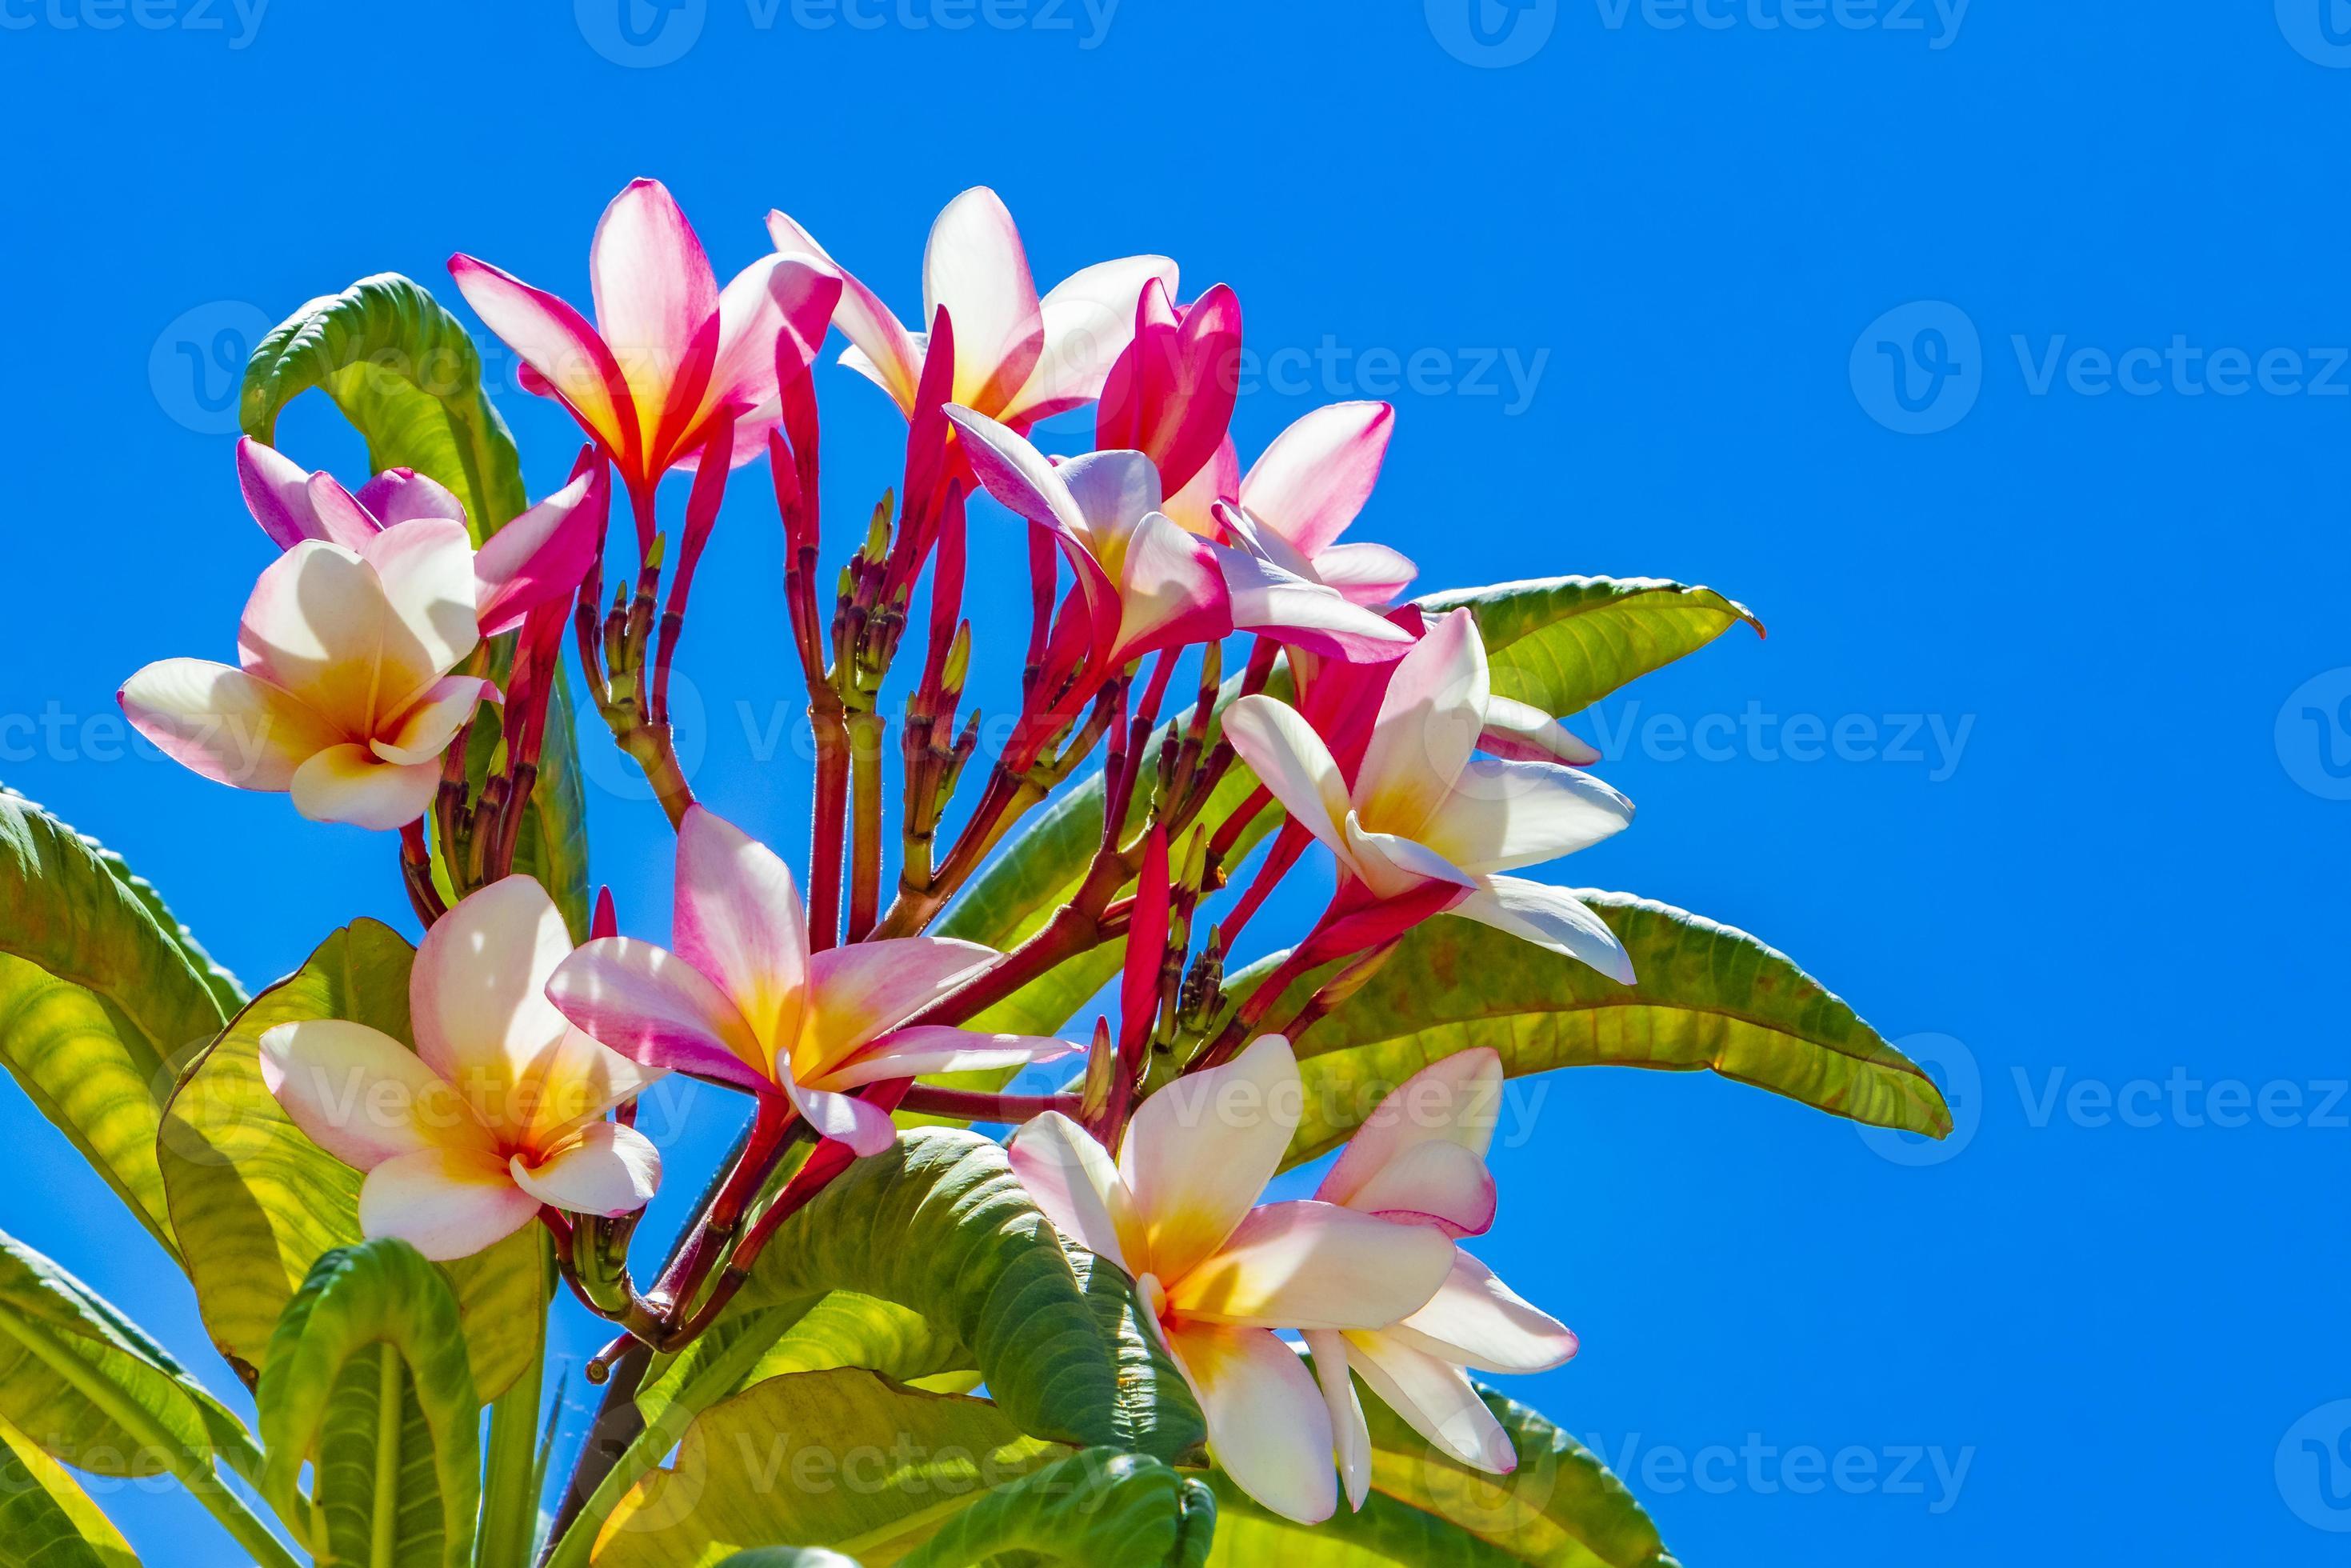 plumeria flores rosas y amarillas con cielo azul en méxico. 3524553 Foto de  stock en Vecteezy